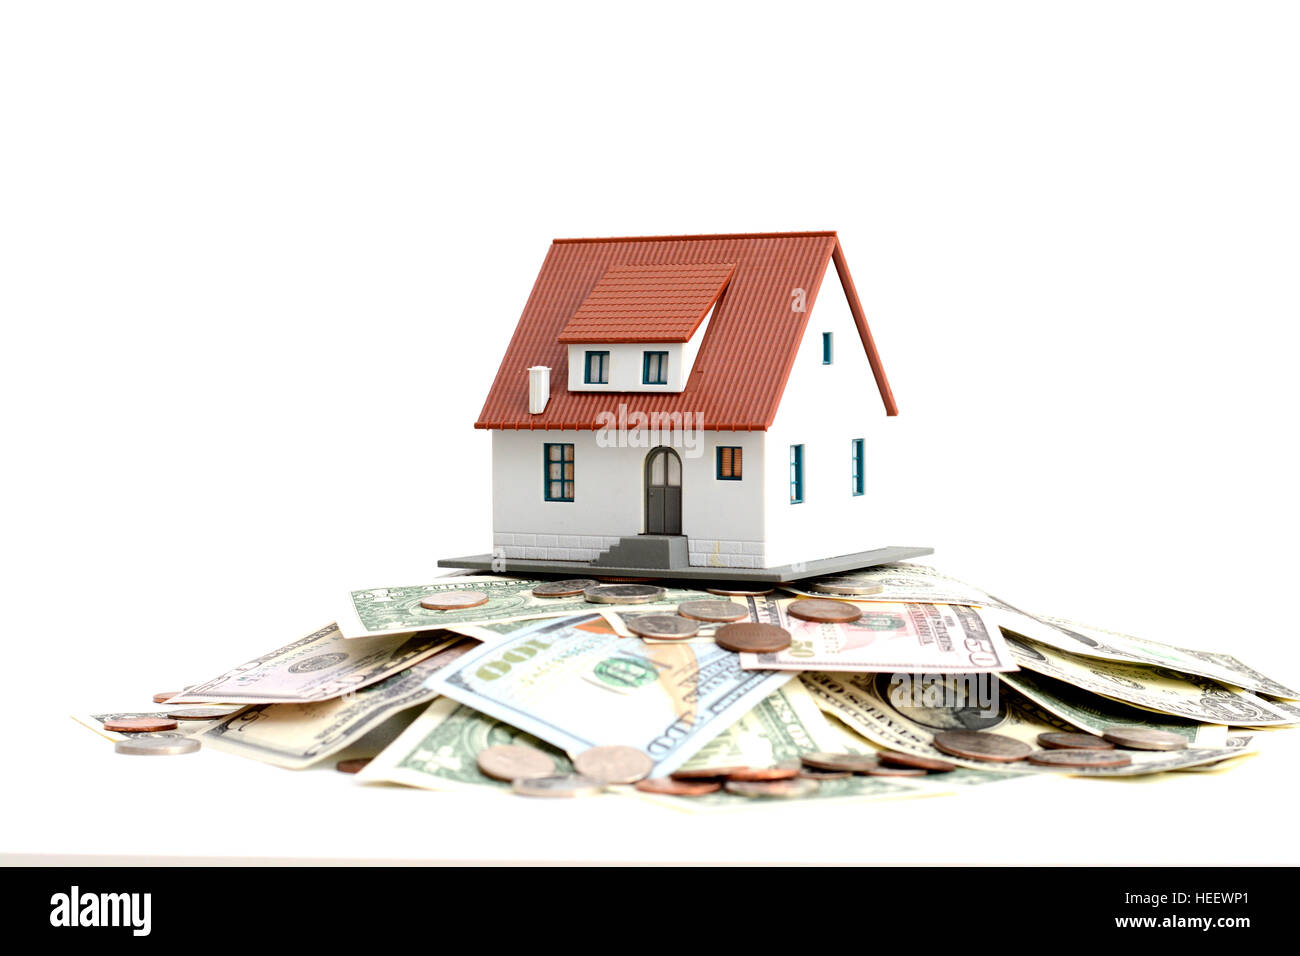 Modello di casa sulla parte superiore della pila di denaro suggerendo risparmi per una casa Foto Stock